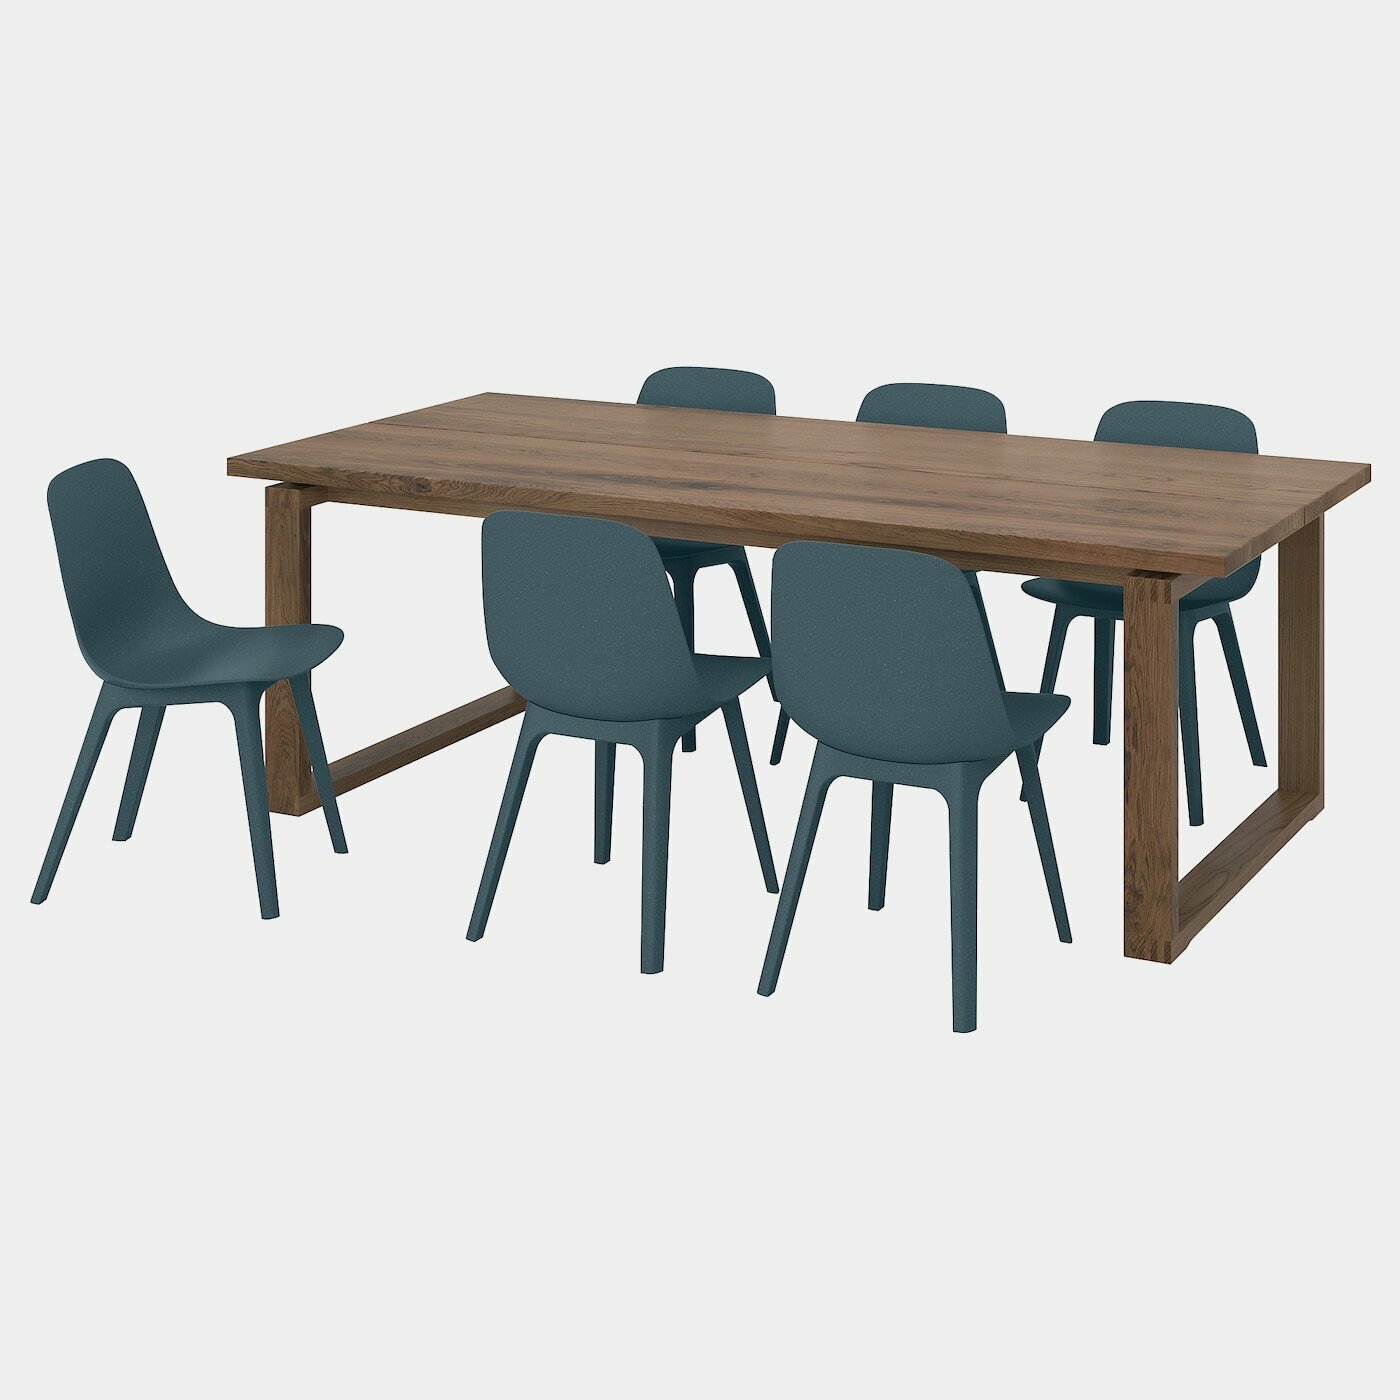 MÖRBYLÅNGA / ODGER Tisch und 6 Stühle  - Essplatzgruppe - Möbel Ideen für dein Zuhause von Home Trends. Möbel Trends von Social Media Influencer für dein Skandi Zuhause.